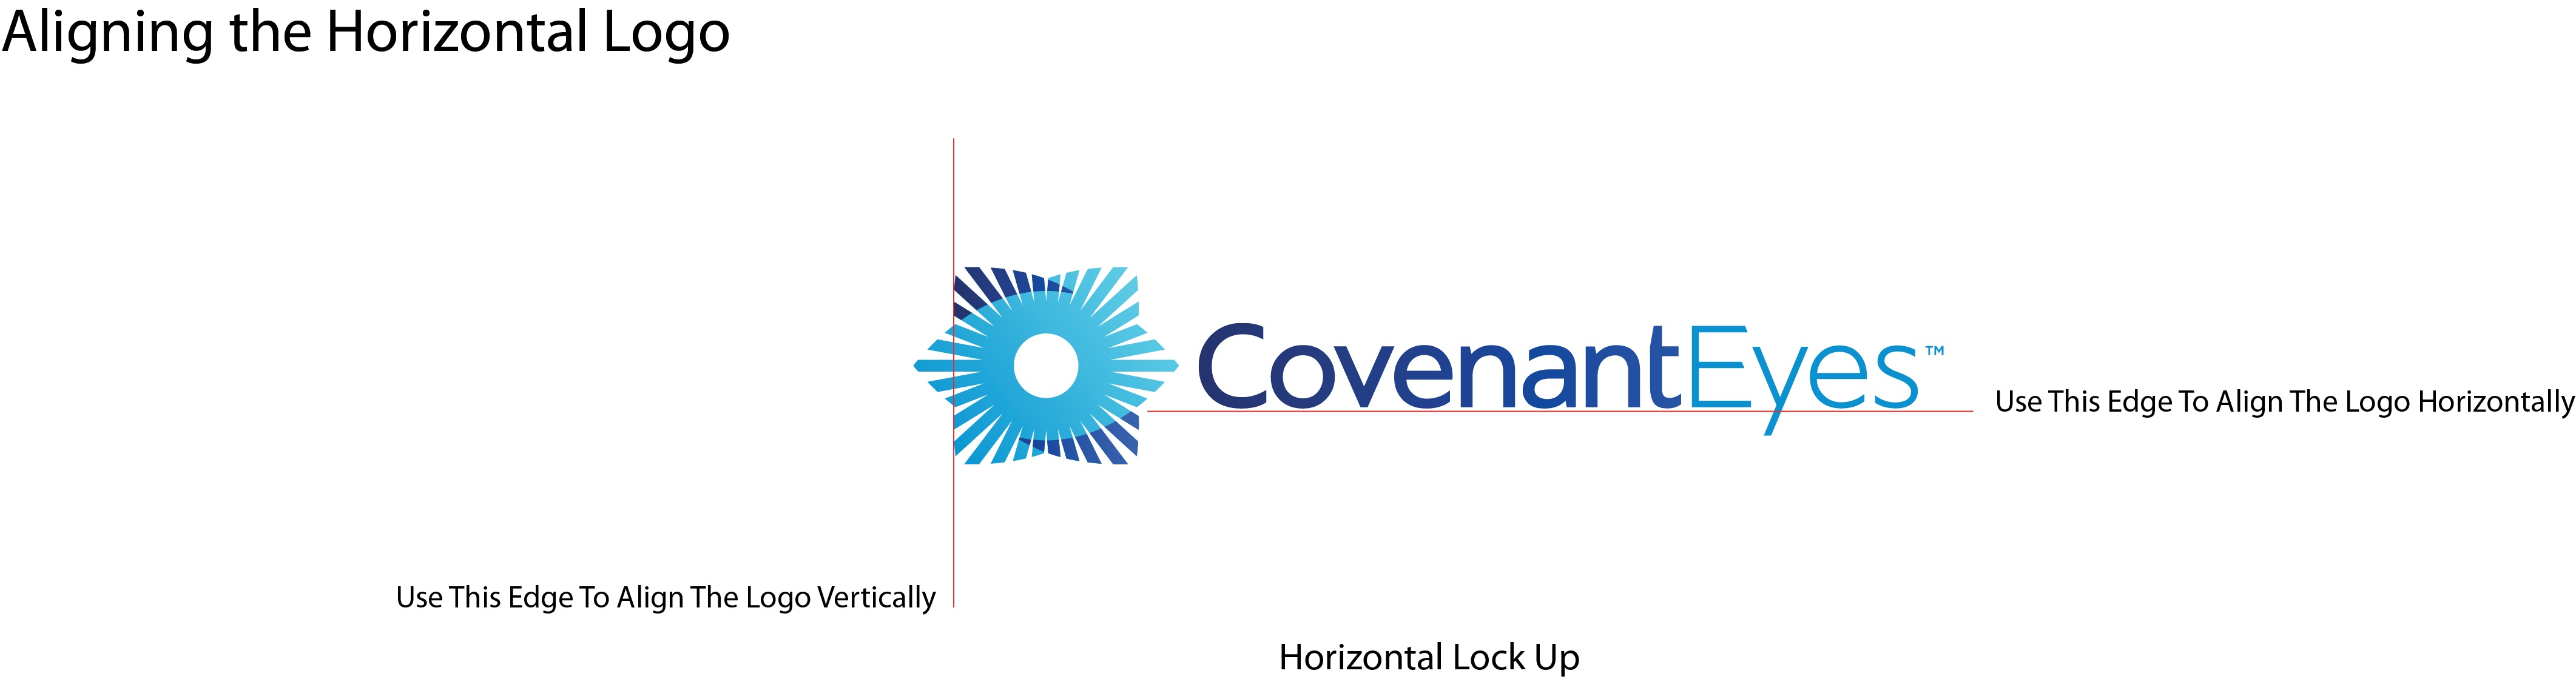 Covenant Eyes Company Logo